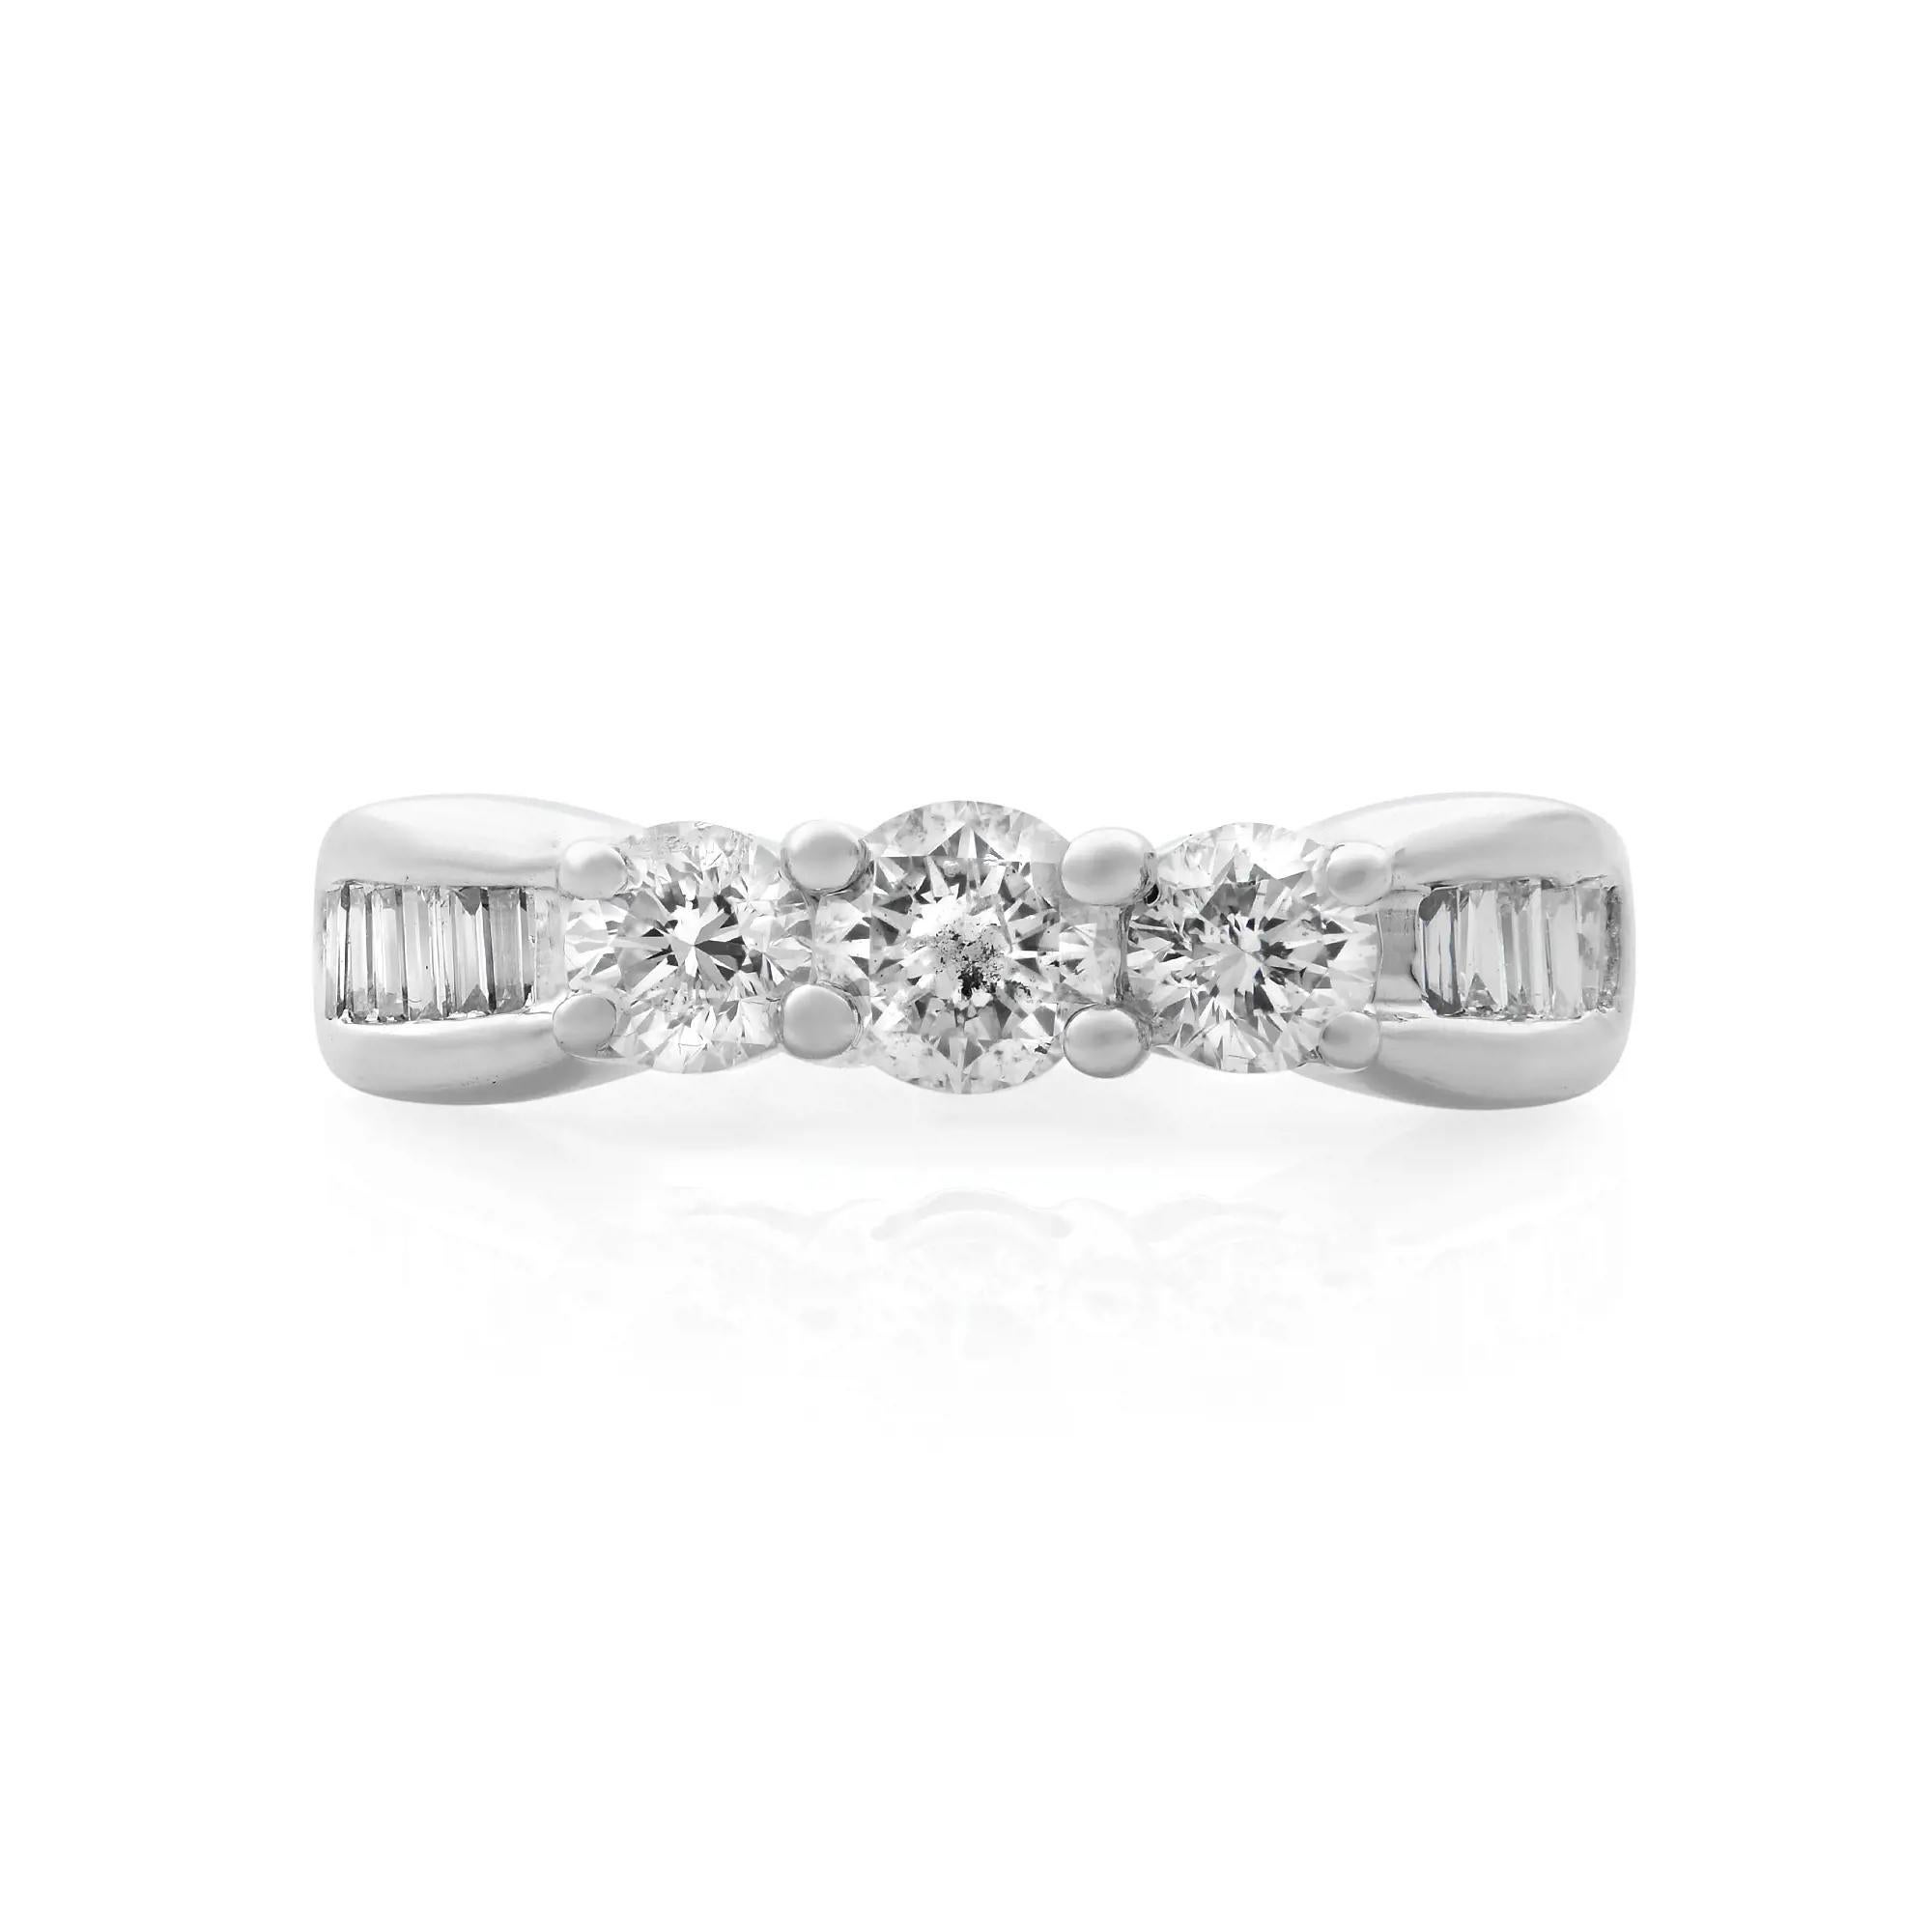 Classique et élégante, cette bague de mariage en diamant est réalisée en or blanc 14K hautement poli. Cette bague présente des diamants ronds brillants parfaitement assortis, sertis à trois griffes, au centre, et des diamants baguettes de chaque